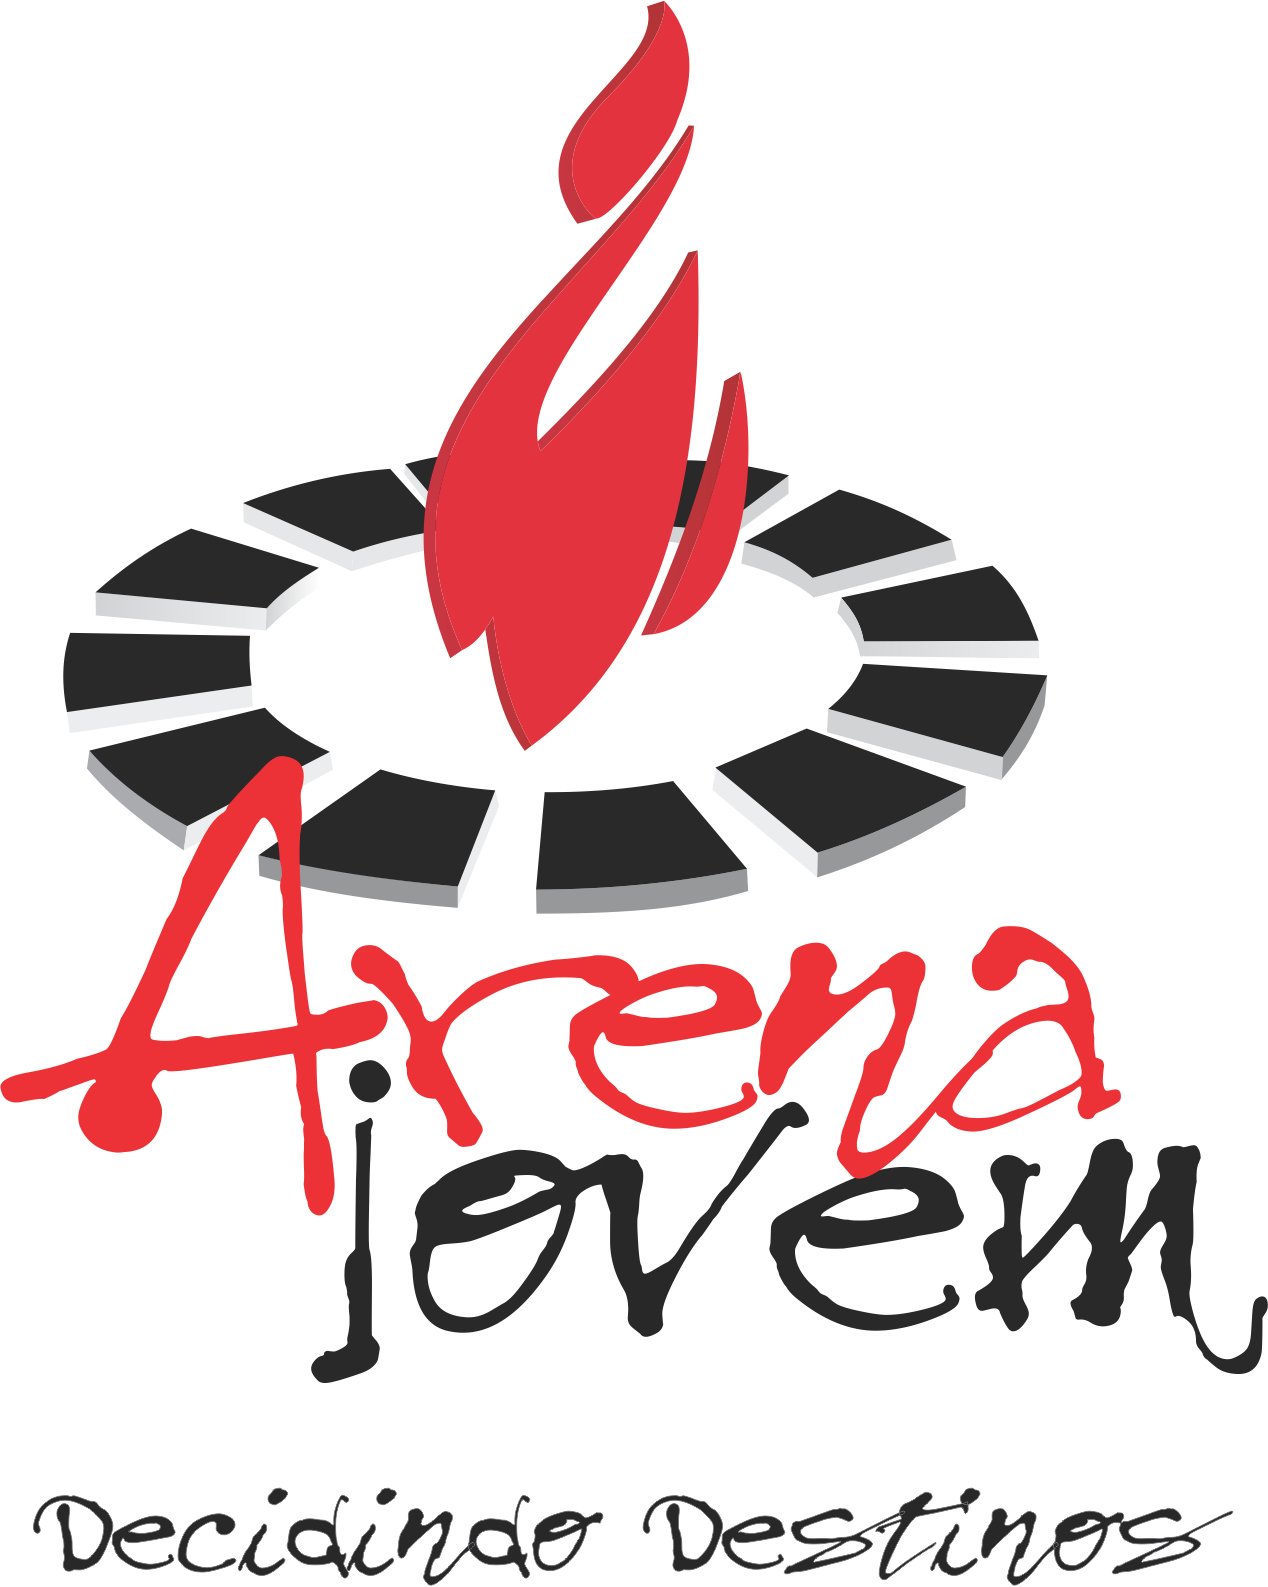 Arena Country Logo Vector